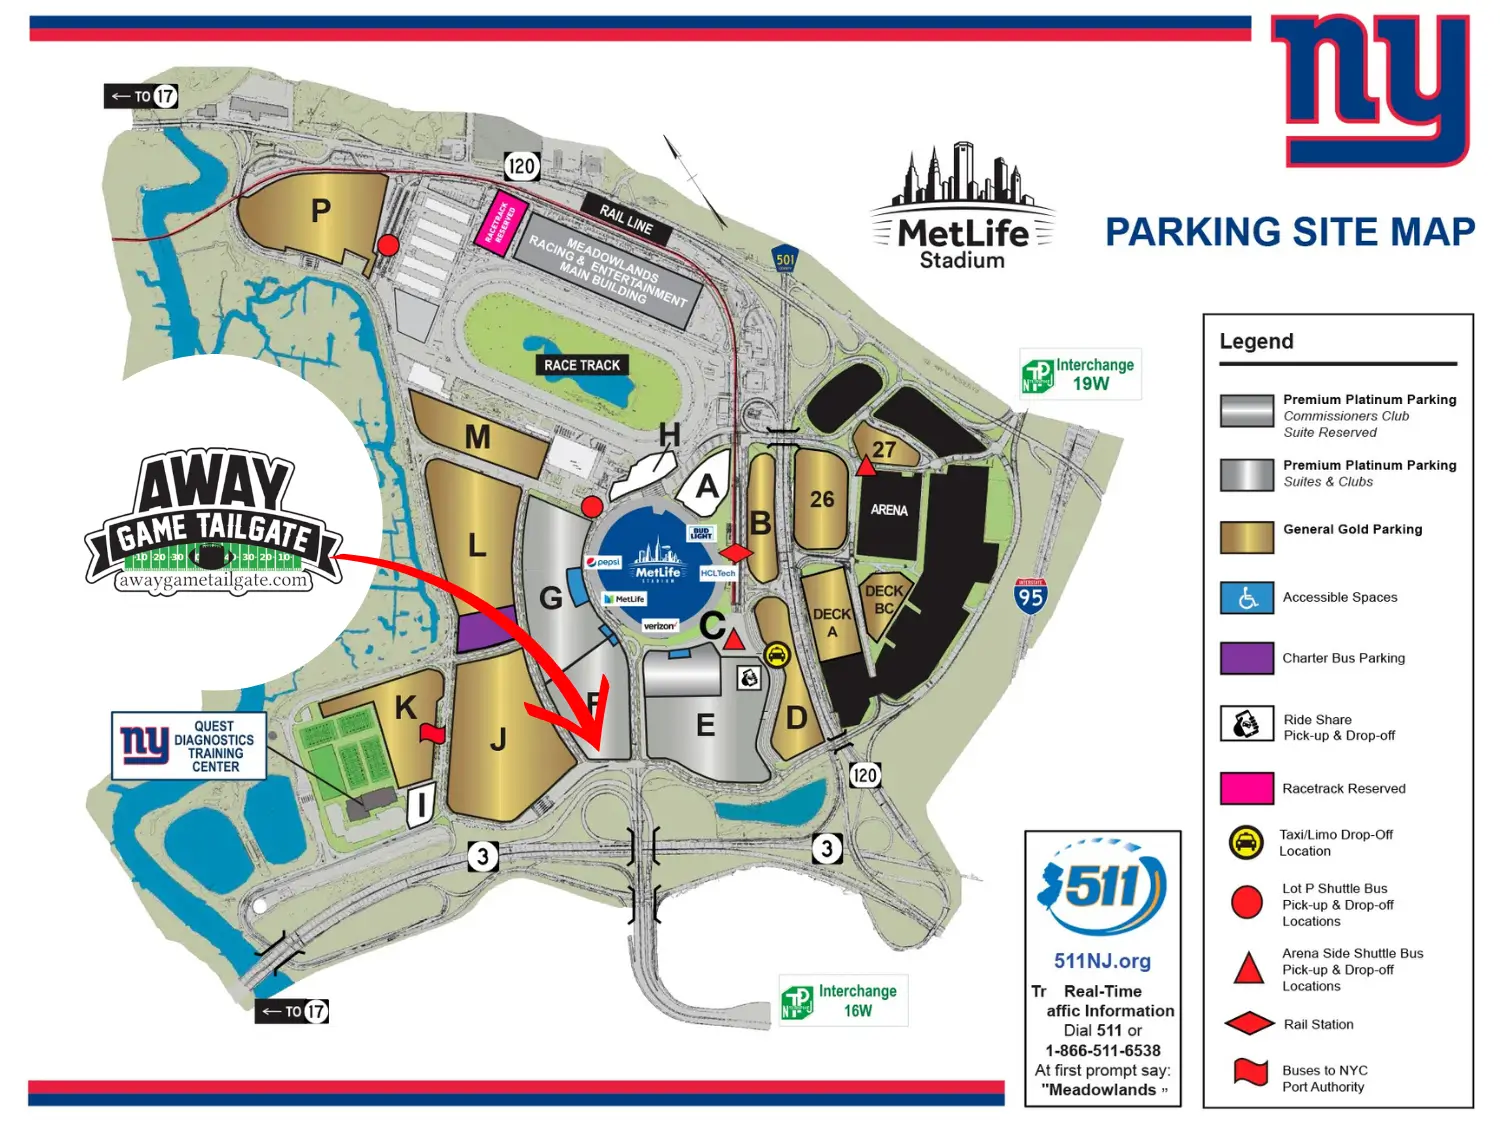 Giants Metlife Stadium Parking Lot Map - Away Game Tailgate